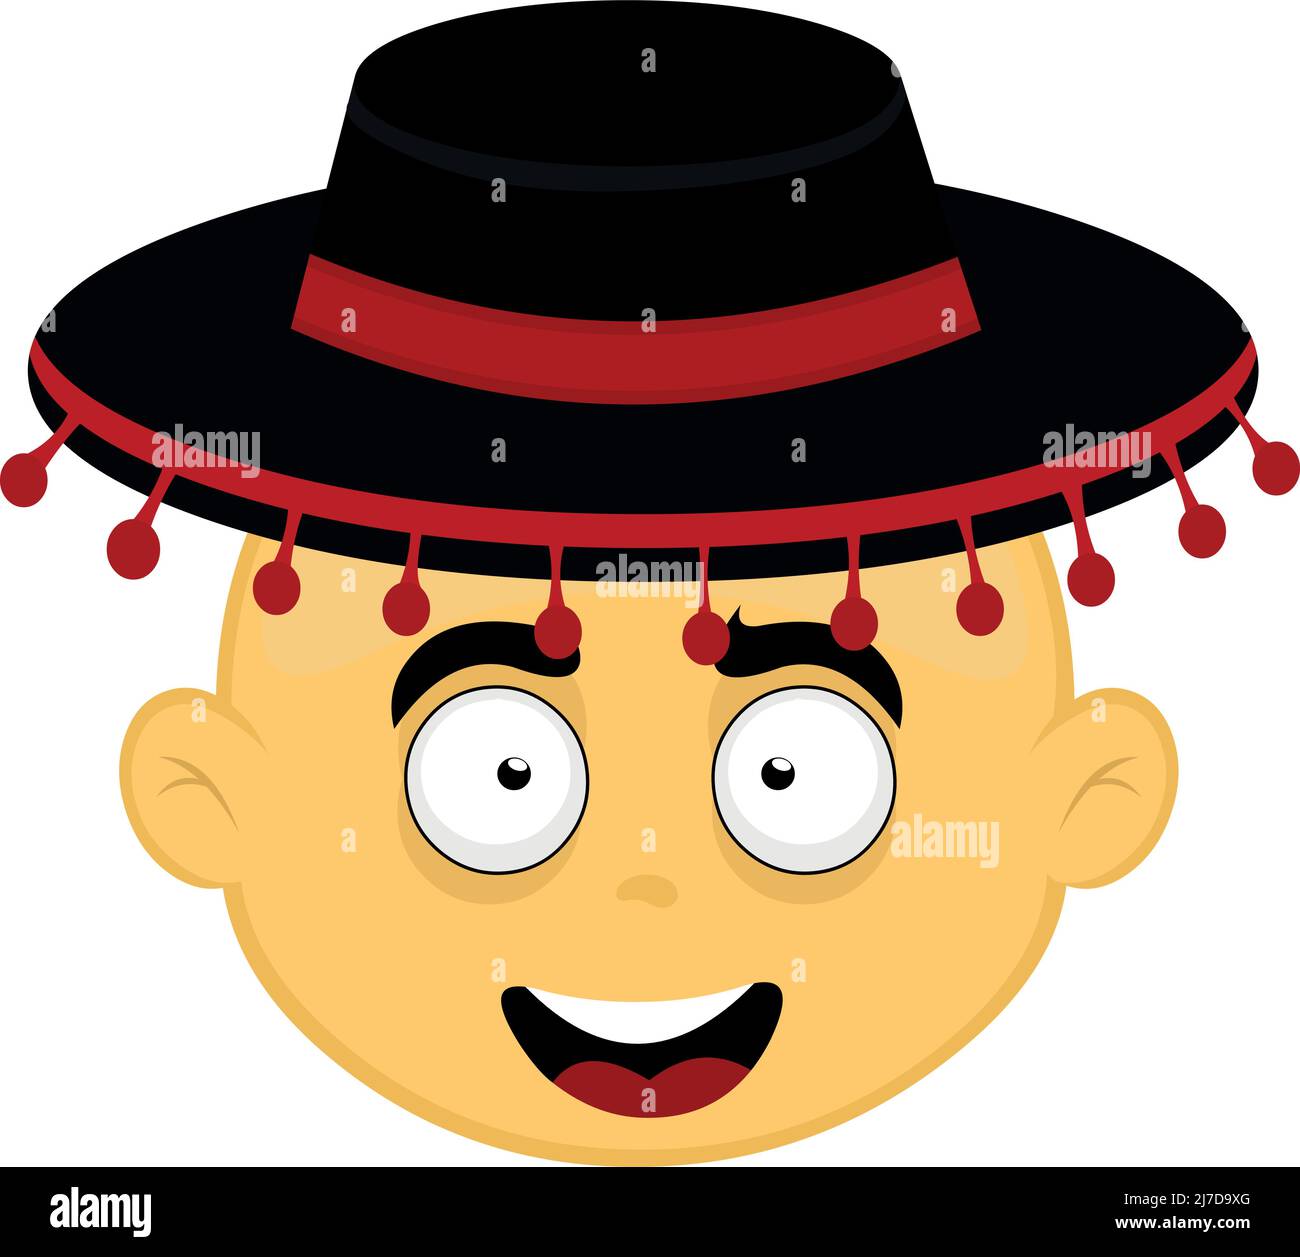 Vektor-Illustration des Gesichts einer gelben Zeichentrickfigur mit einem klassischen spanischen Flamenco-Hut Stock Vektor